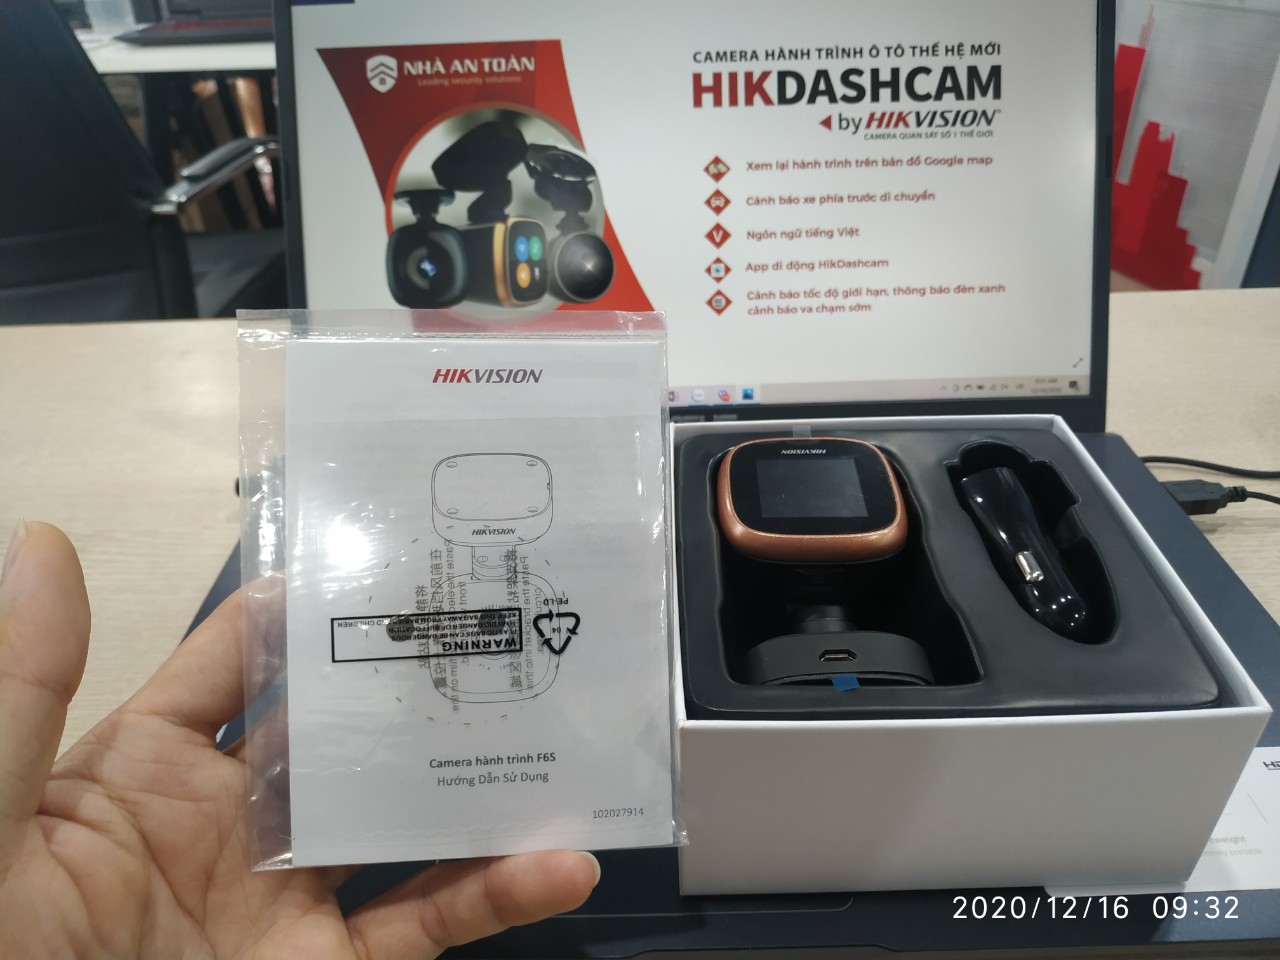 Camera hành trình thông minh Hikvision F6S [Hàng nhập khẩu]